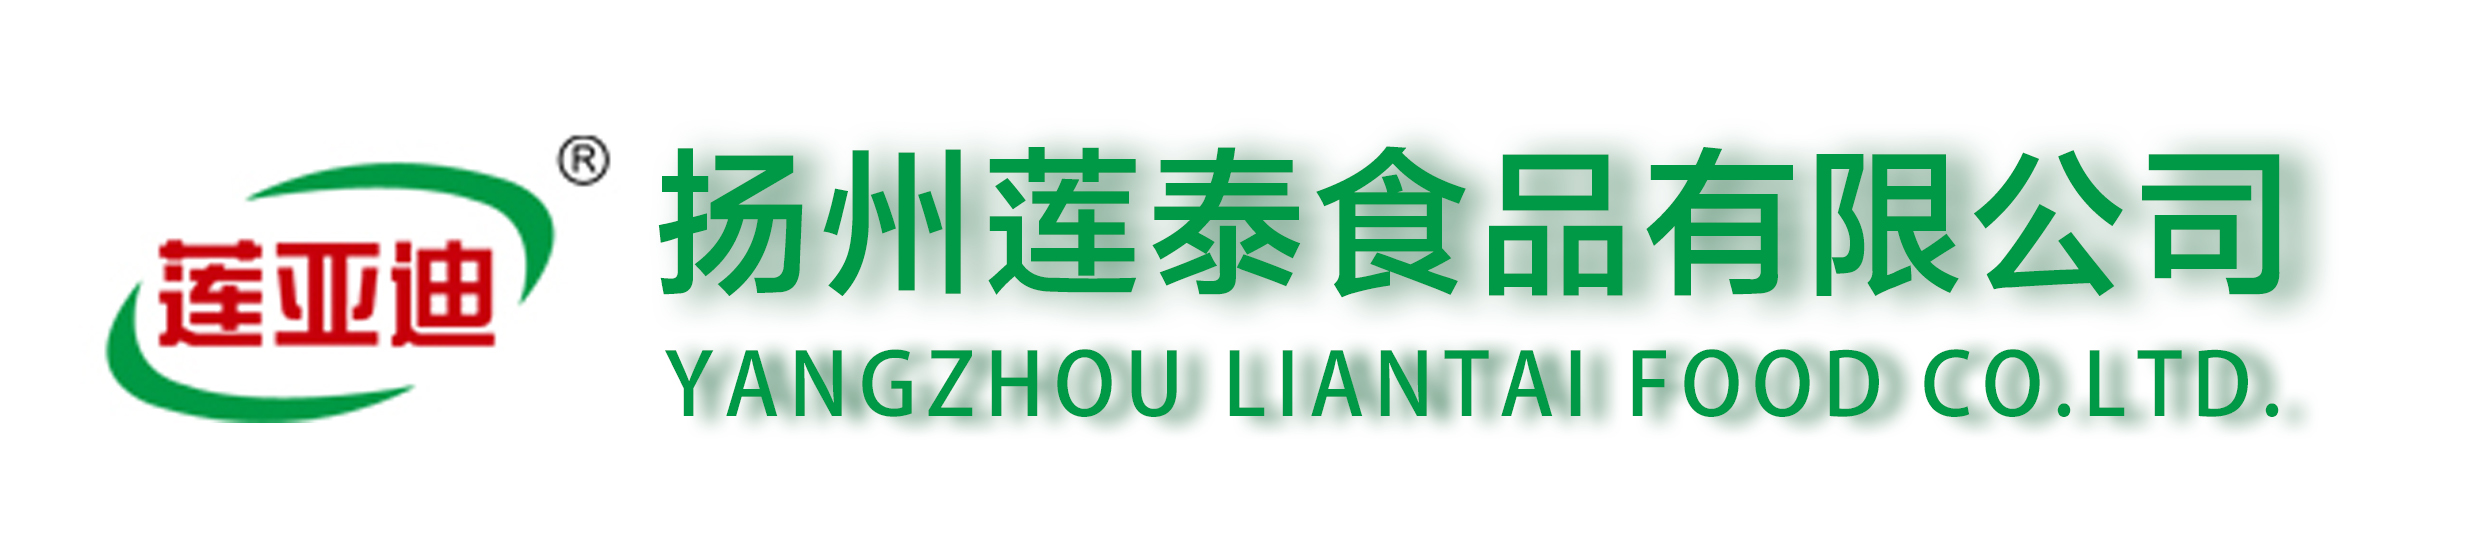 扬州莲泰食品有限公司Logo